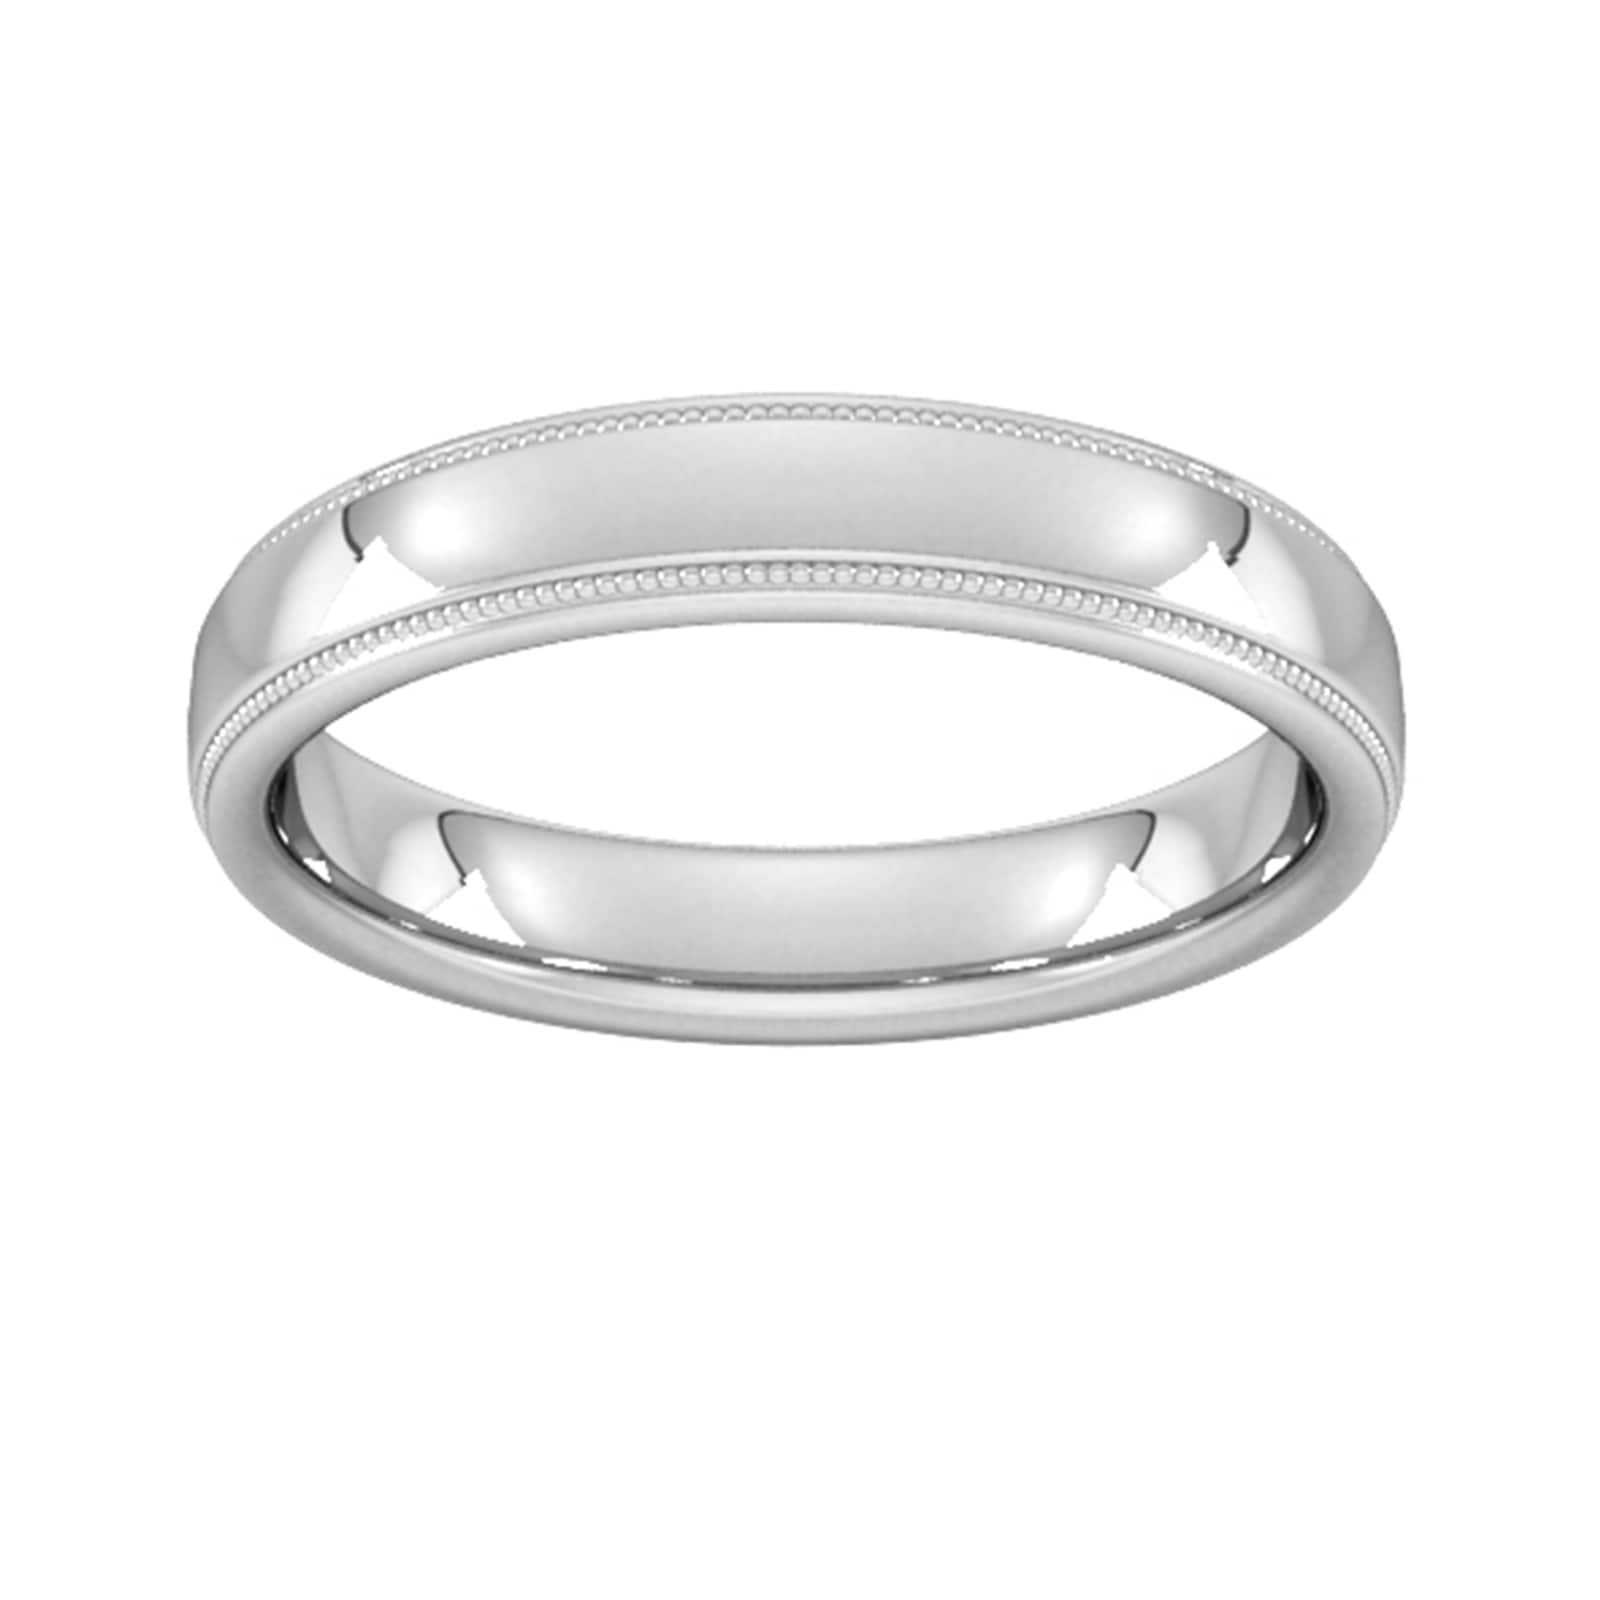 4mm Slight Court Standard Milgrain Edge Wedding Ring In 18 Carat White Gold - Ring Size W